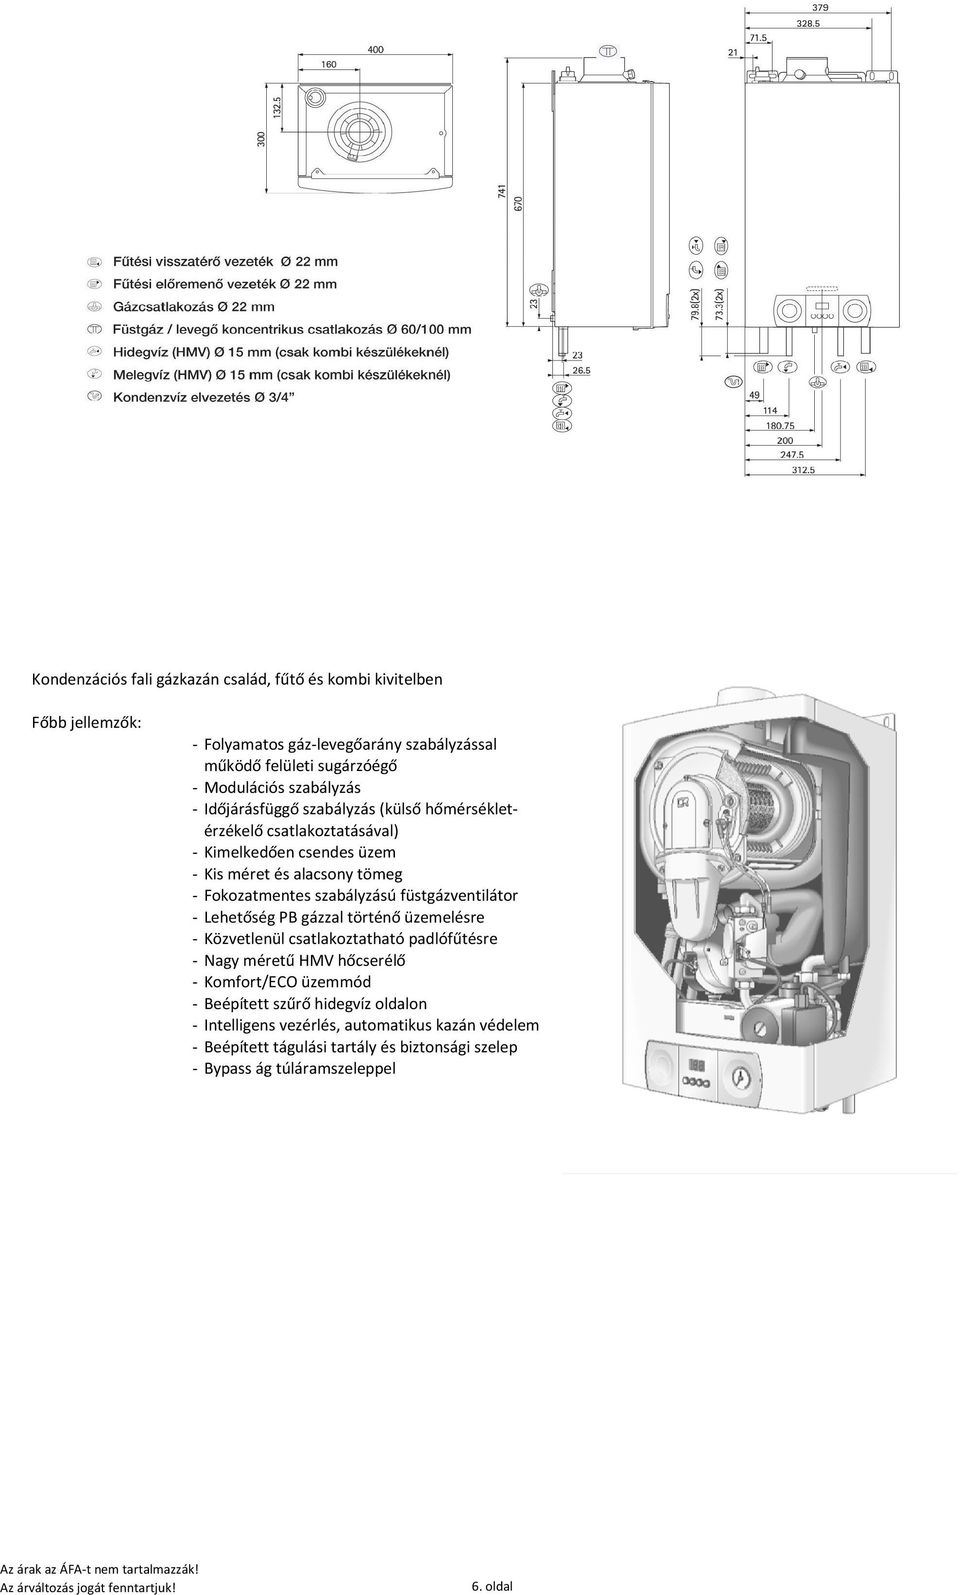 szabályzású füstgázventilátor - Lehetőség PB gázzal történő üzemelésre - Közvetlenül csatlakoztatható padlófűtésre - Nagy méretű HMV hőcserélő - Komfort/ECO